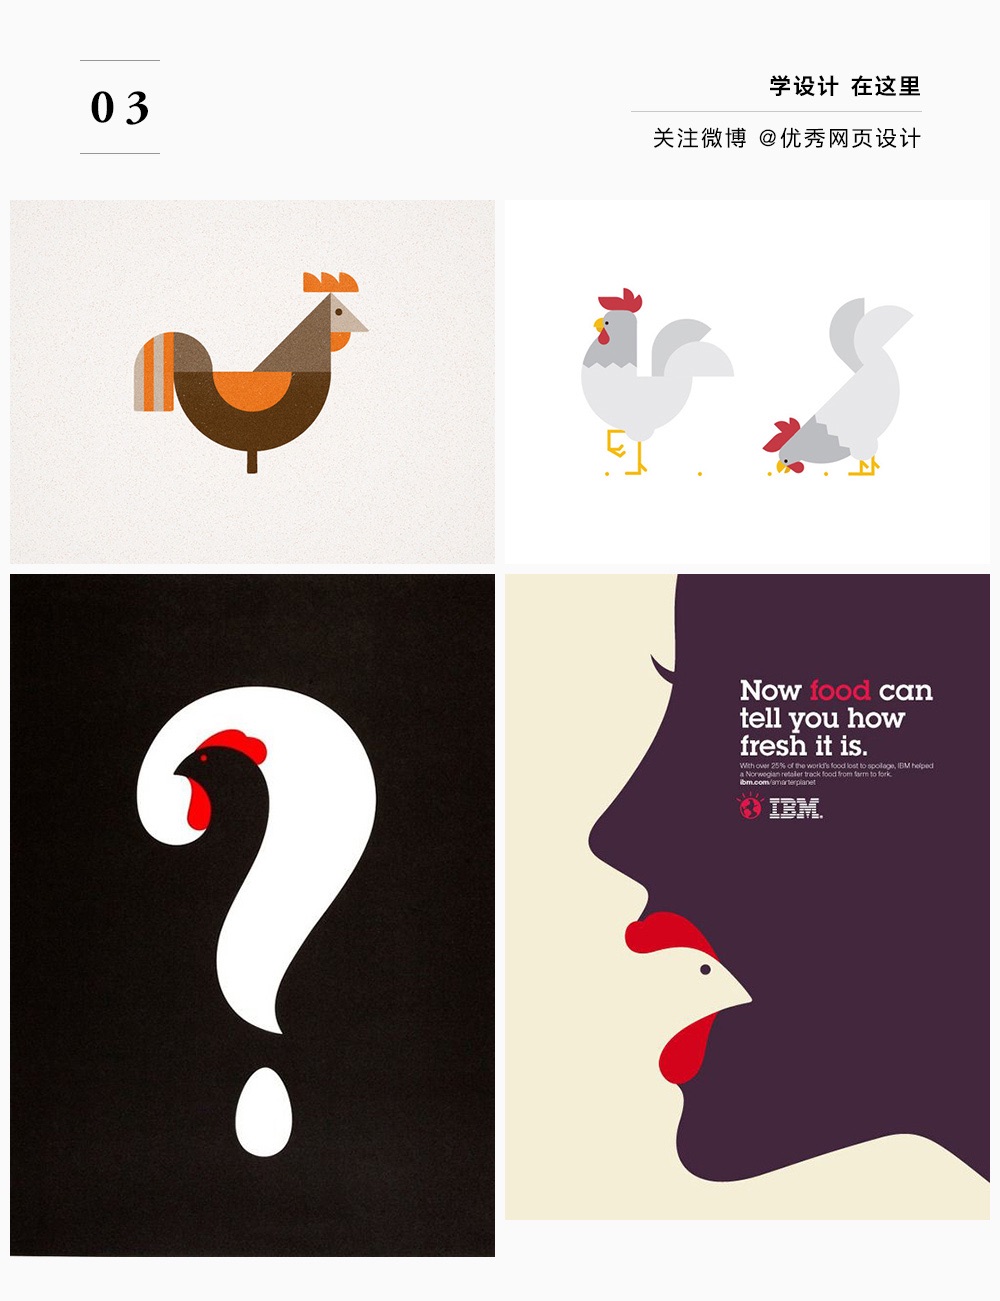 关于鸡的设计，你会么？